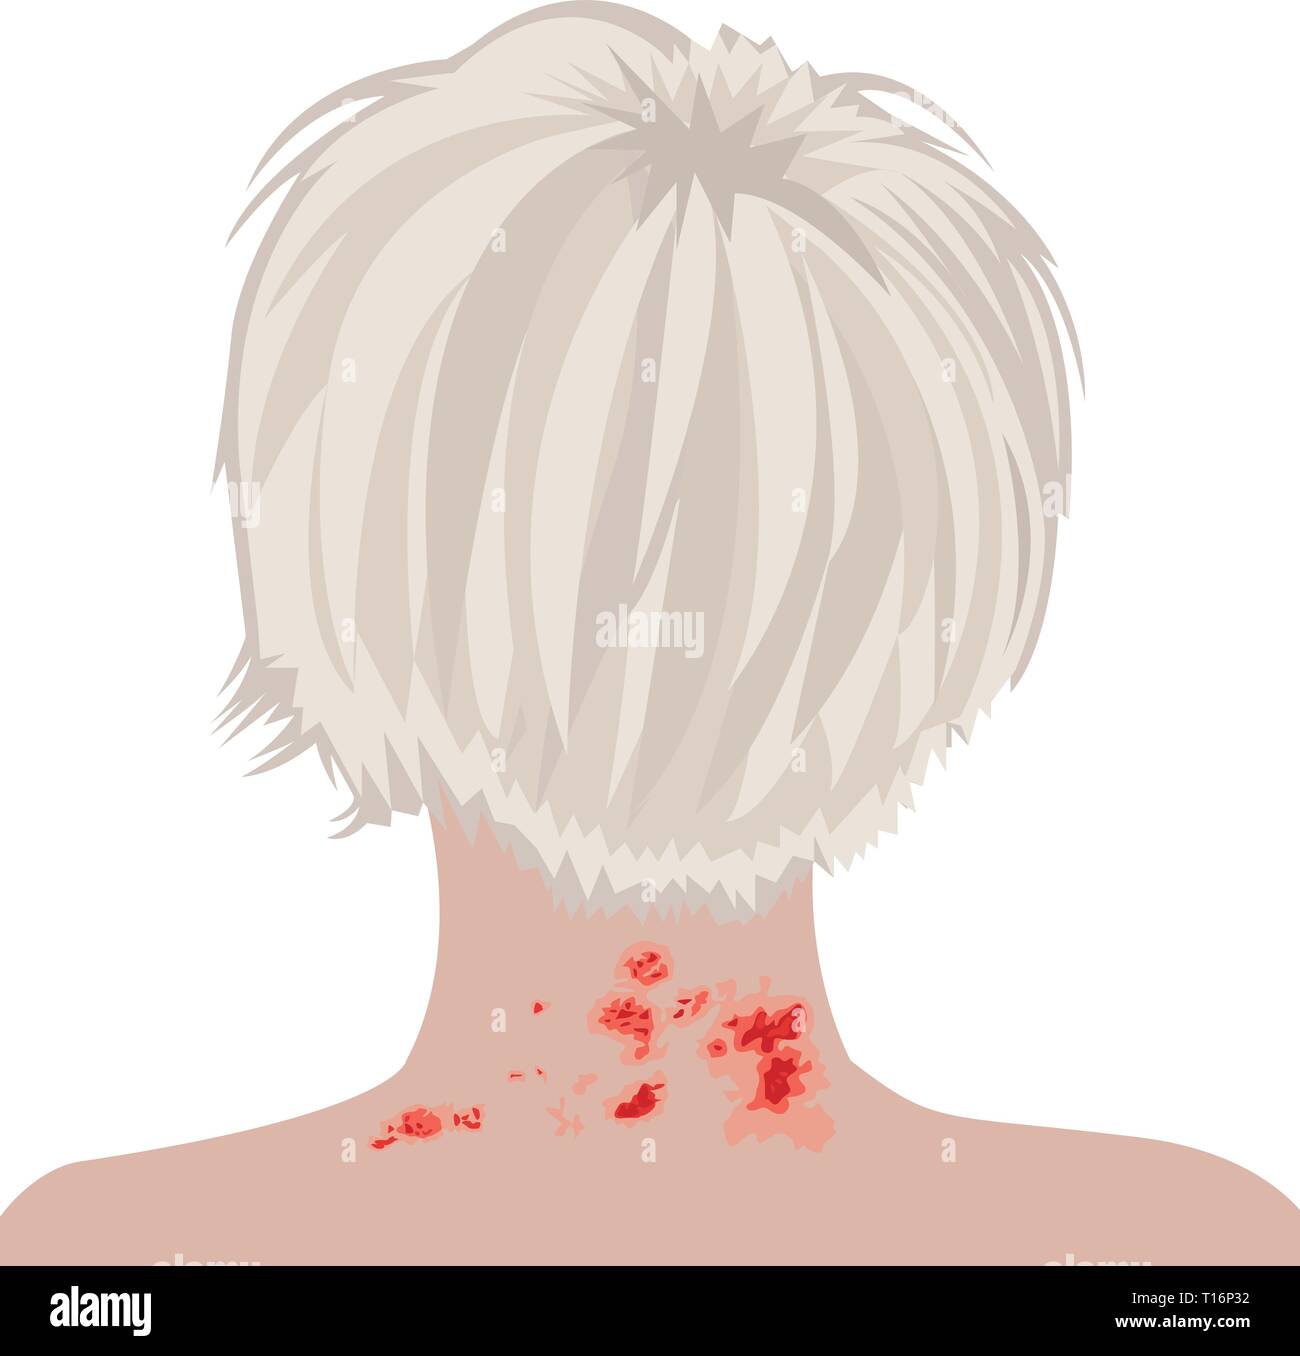 Les bardeaux sur l'épaule d'une femme d'illustration vectorielle de varicelle-zona. Illustration de Vecteur